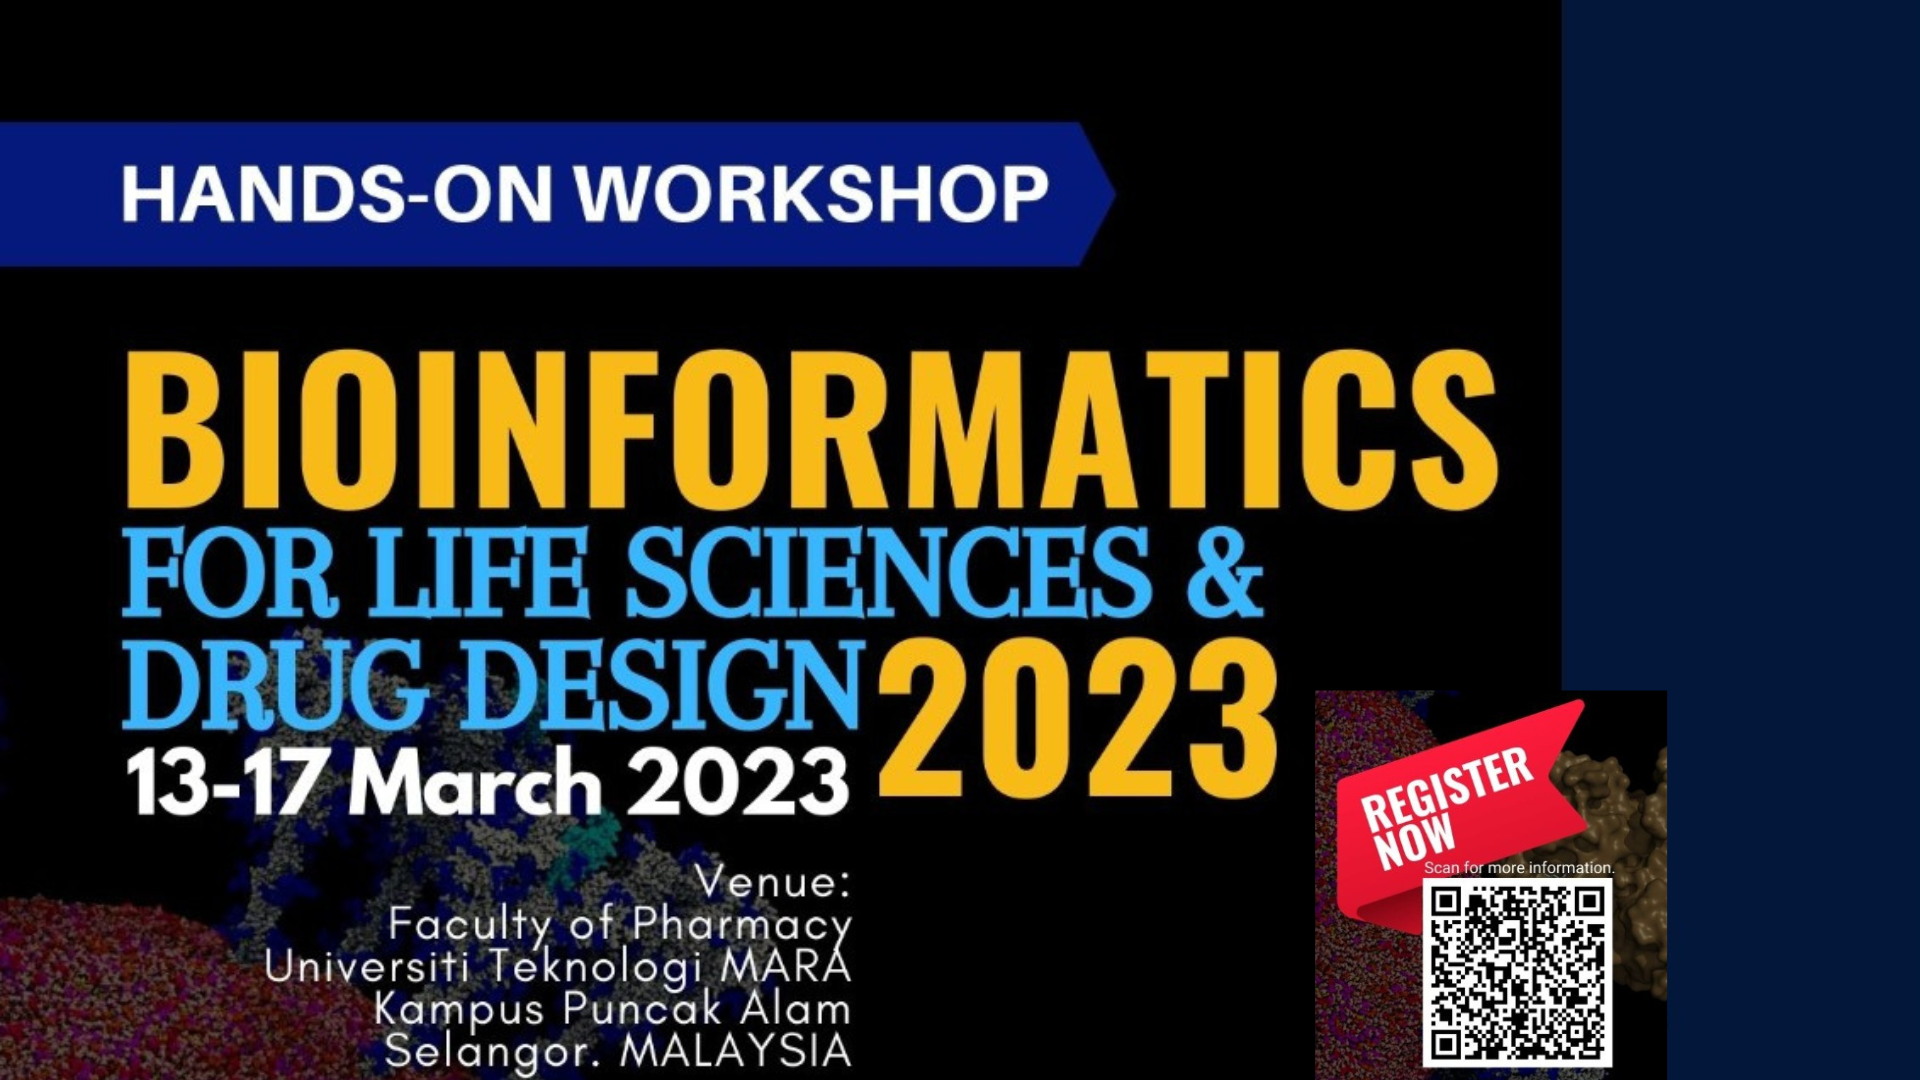 Bioinformatics for Life Sciences & Drug Design Workshop 2023